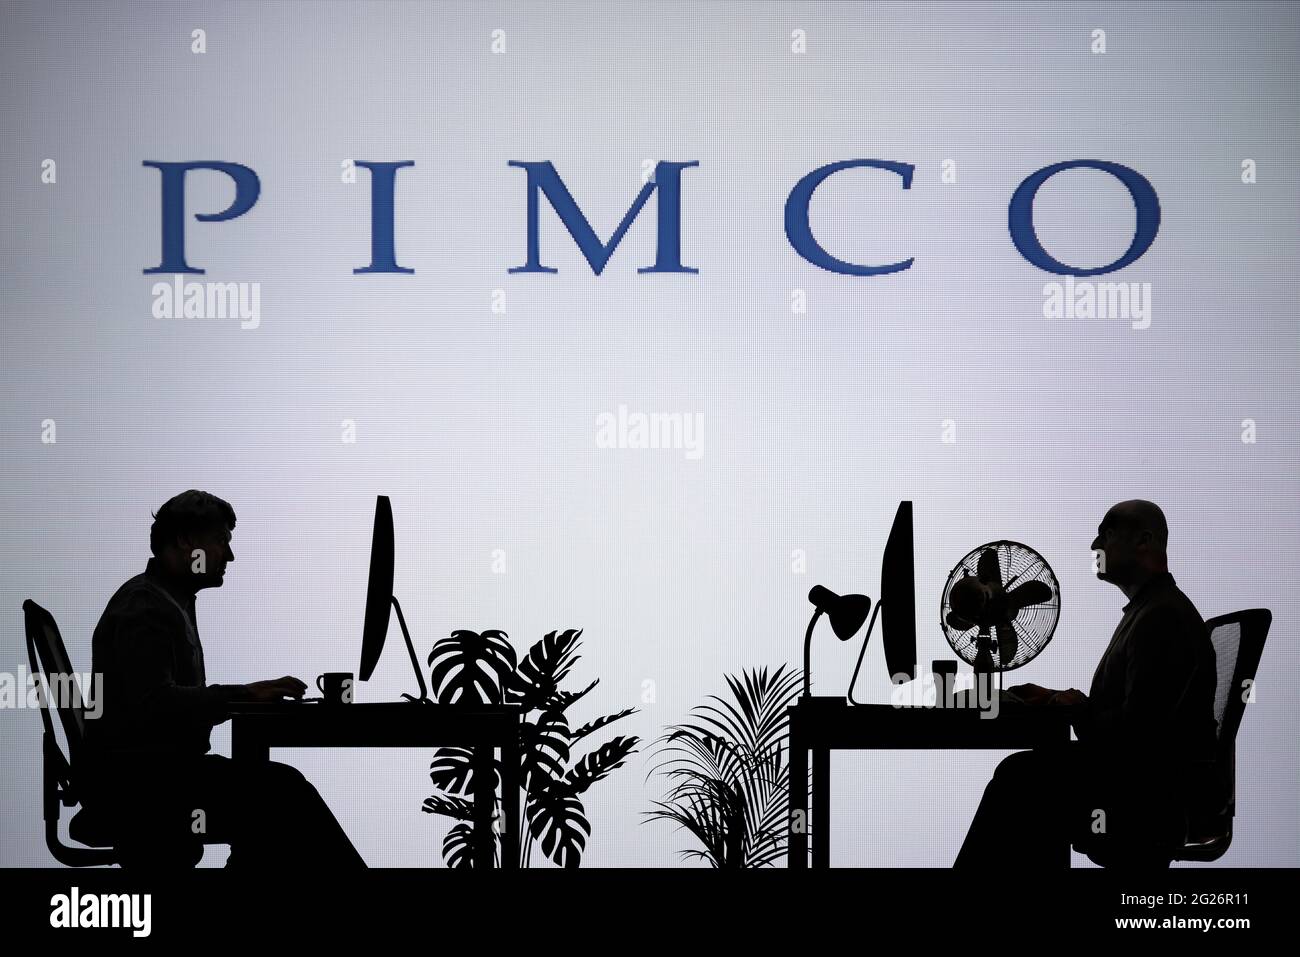 Le logo PIMCO est visible sur un écran LED en arrière-plan tandis que deux personnes silhouetées travaillent dans un environnement de bureau (usage éditorial uniquement) Banque D'Images